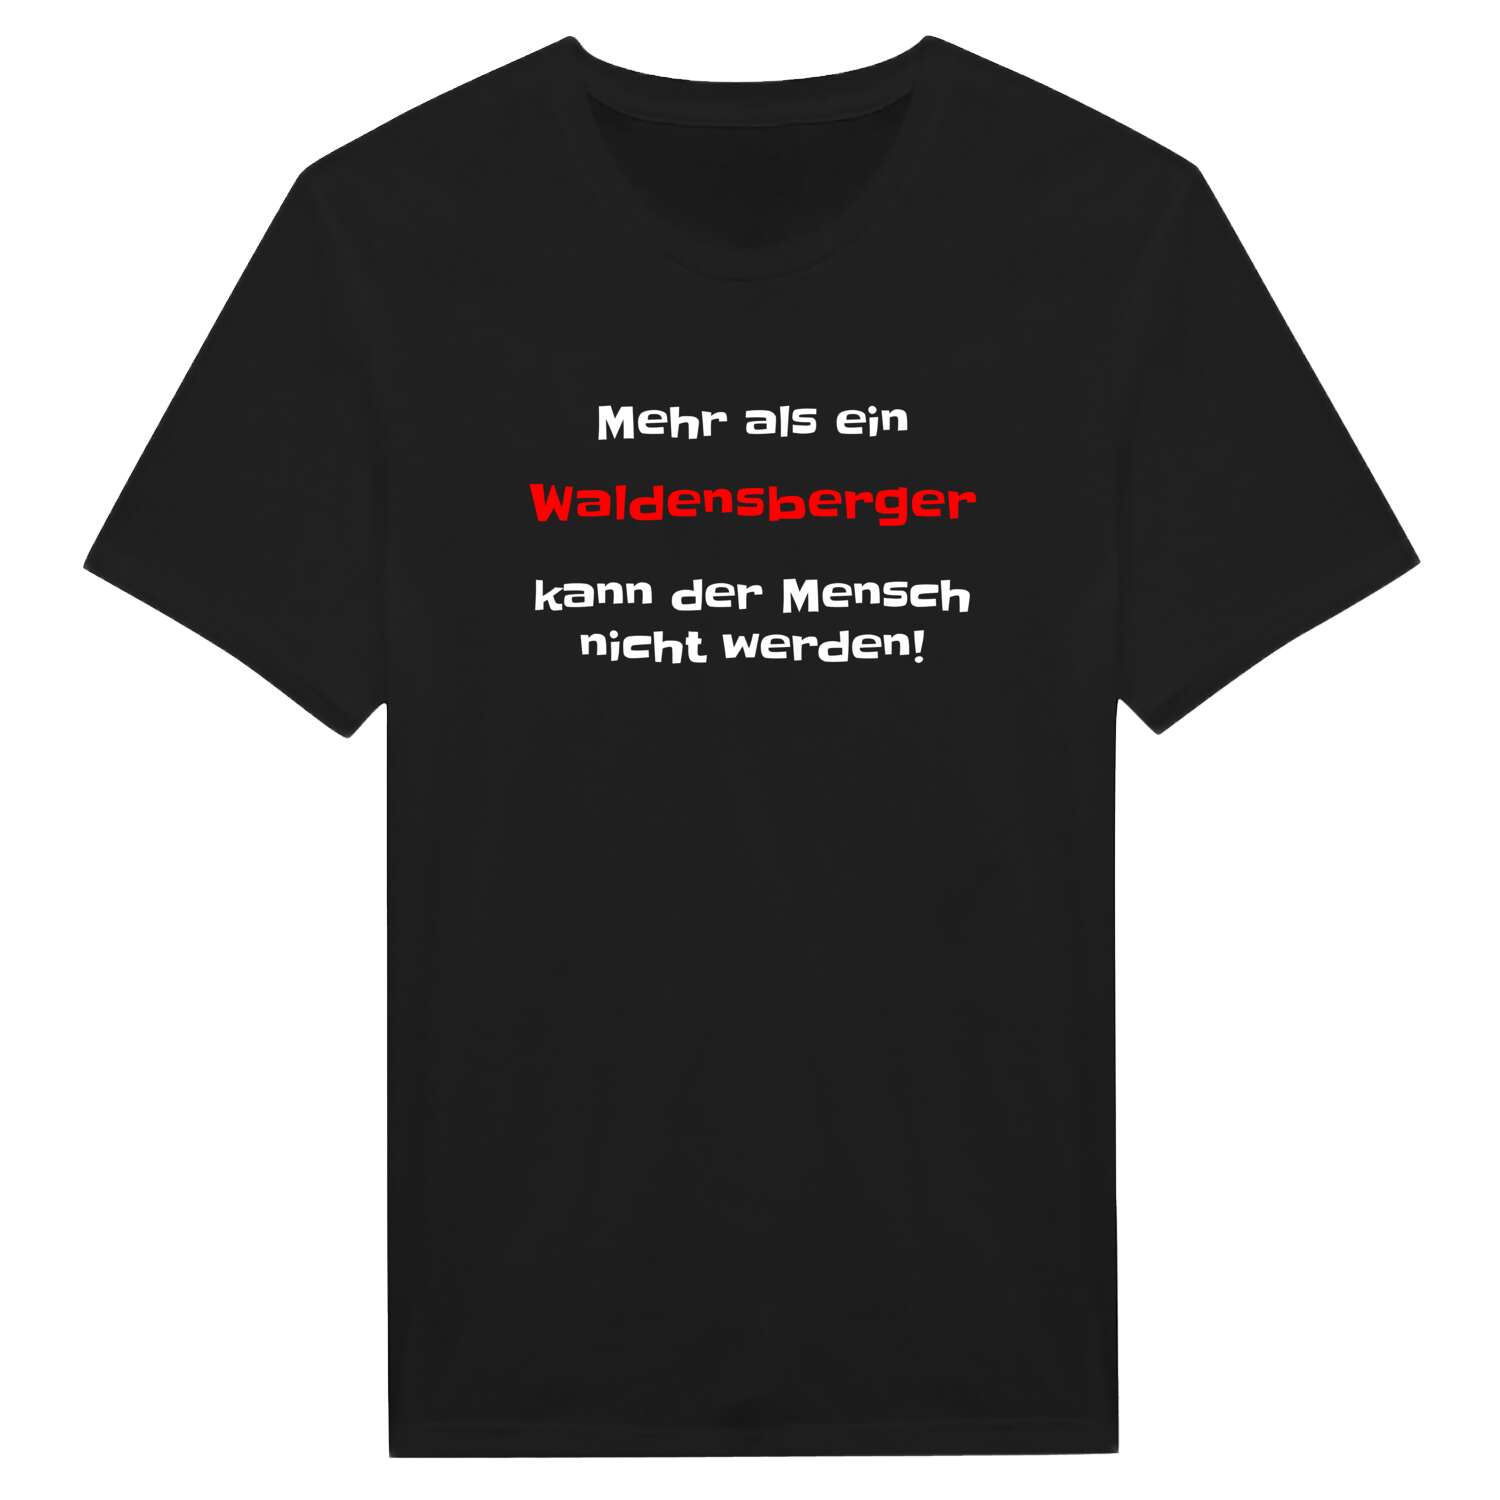 Waldensberg T-Shirt »Mehr als ein«